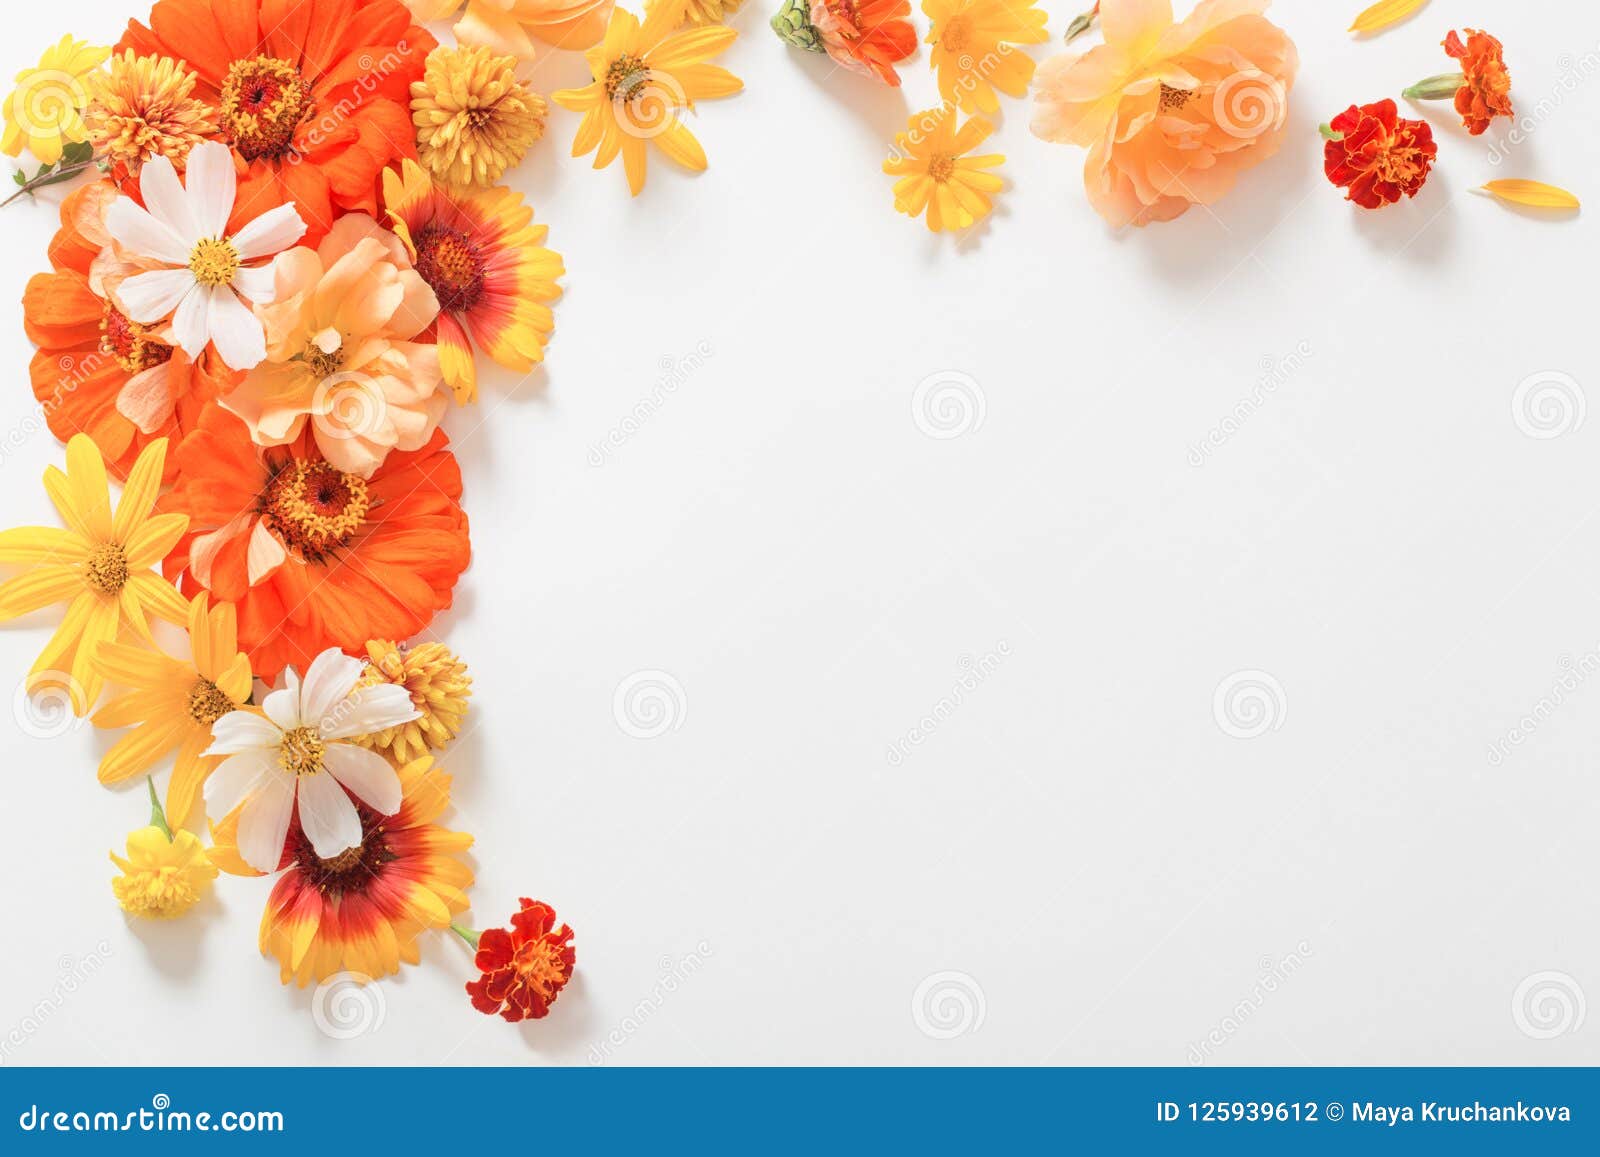 Yellow and Orange Flowers on White Background Stock Photo - Image of flat,  orange: 125939612